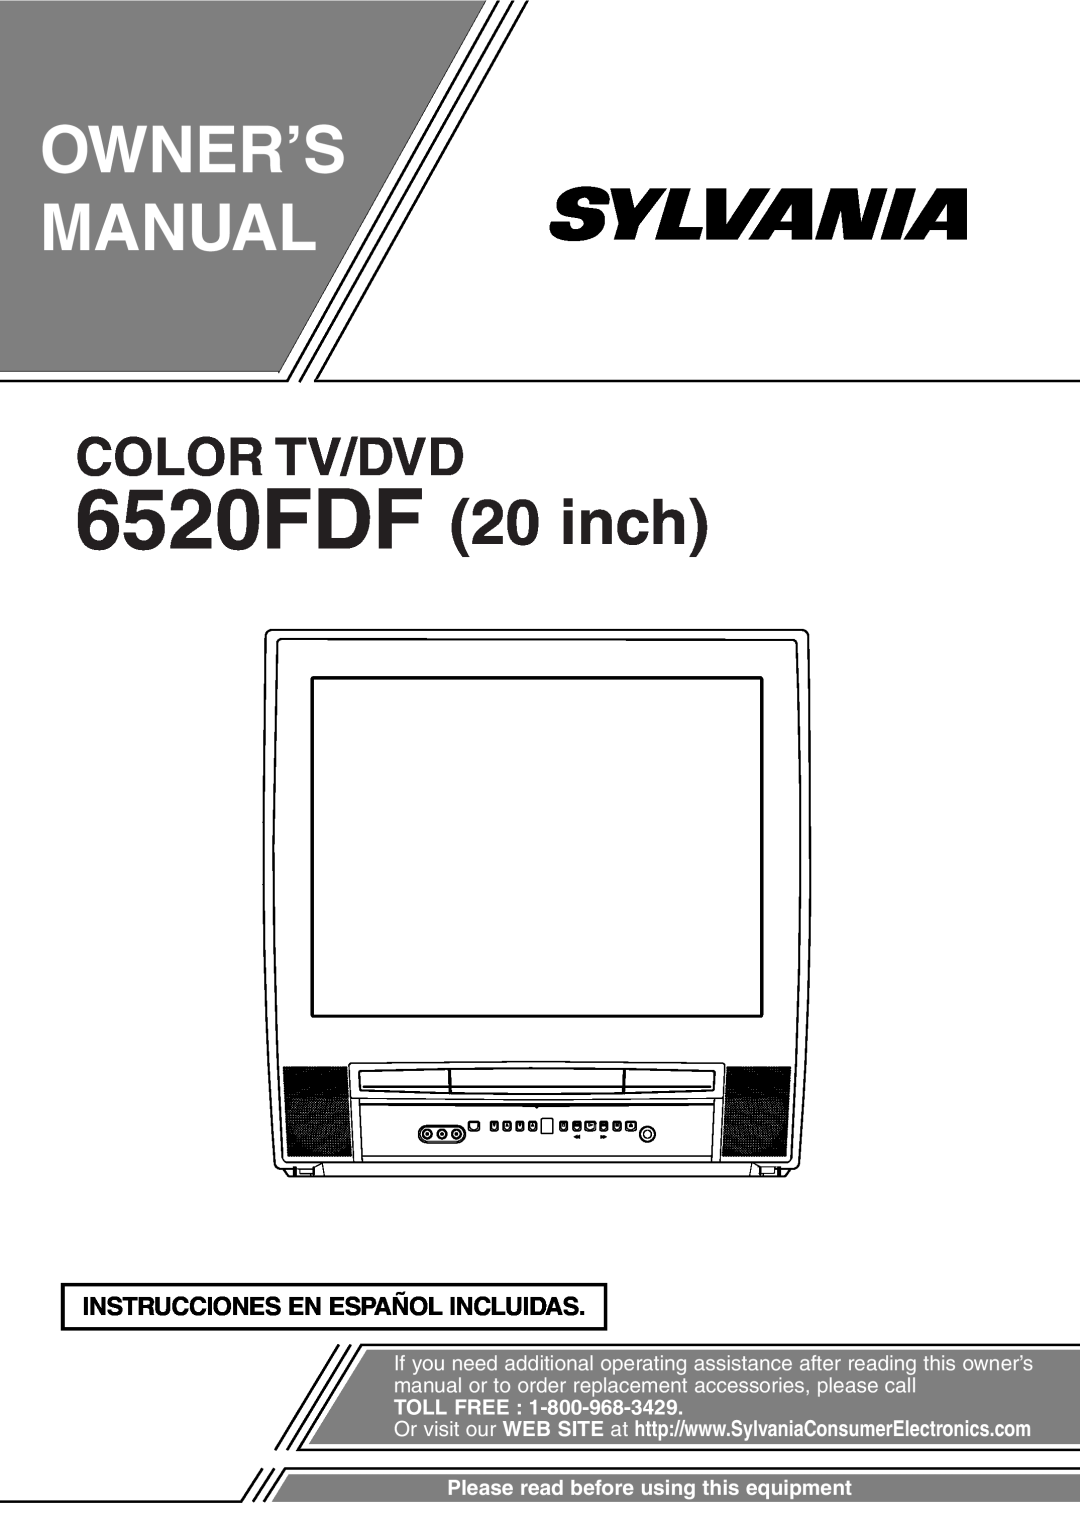 Sylvania owner manual Instrucciones En Español Incluidas, Owner’S Manual, 6520FDF 20 inch, Color Tv/Dvd, Toll Free 